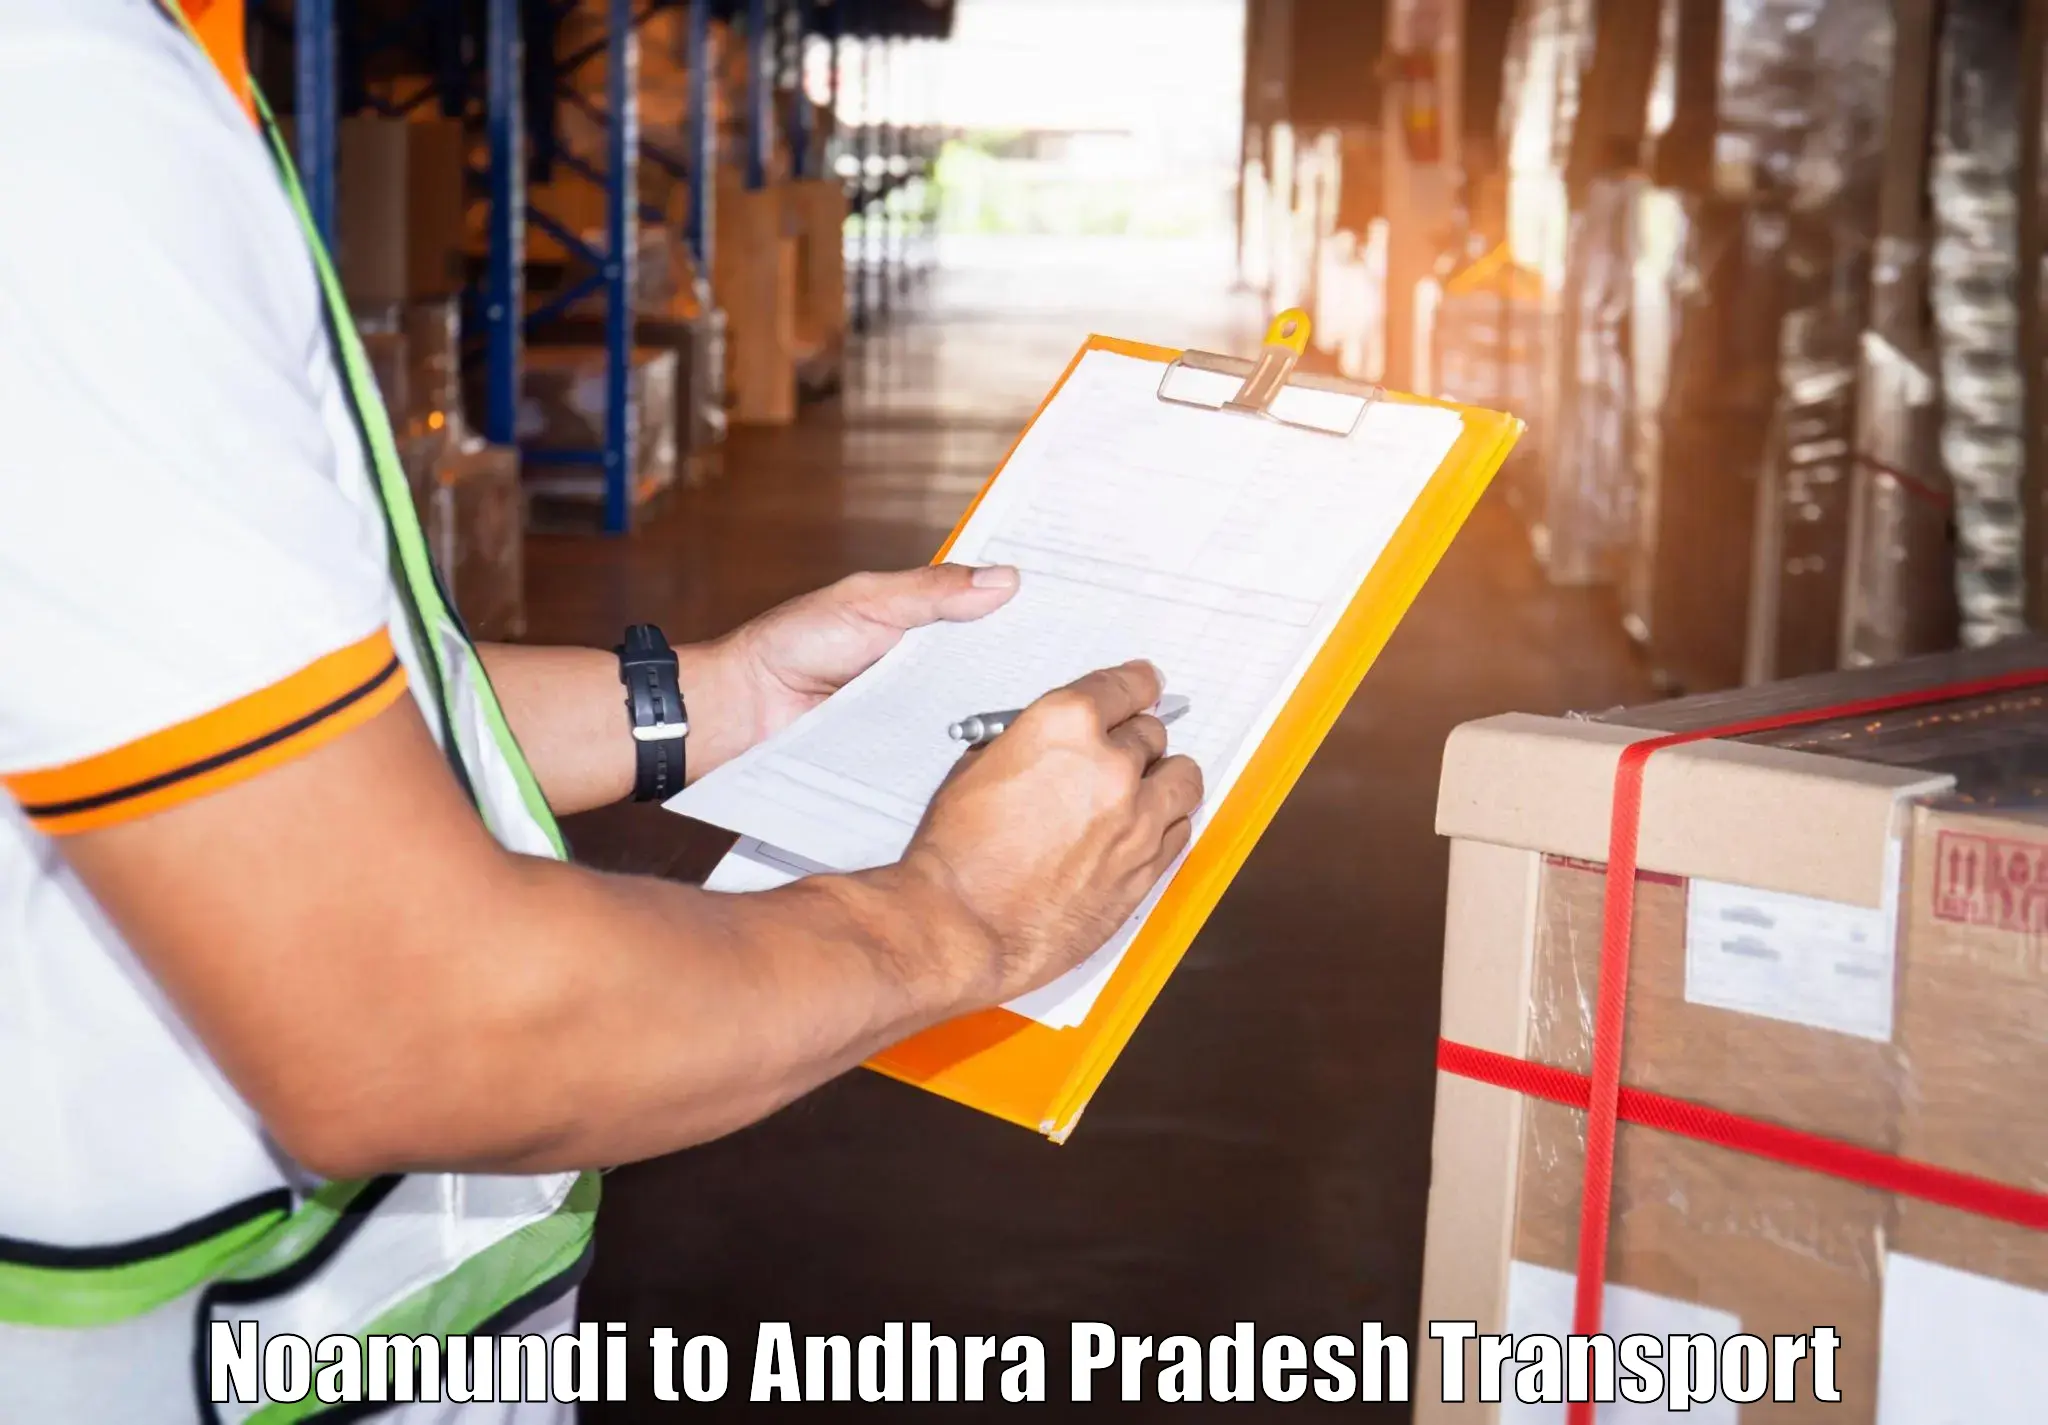 Furniture transport service Noamundi to Andhra Pradesh